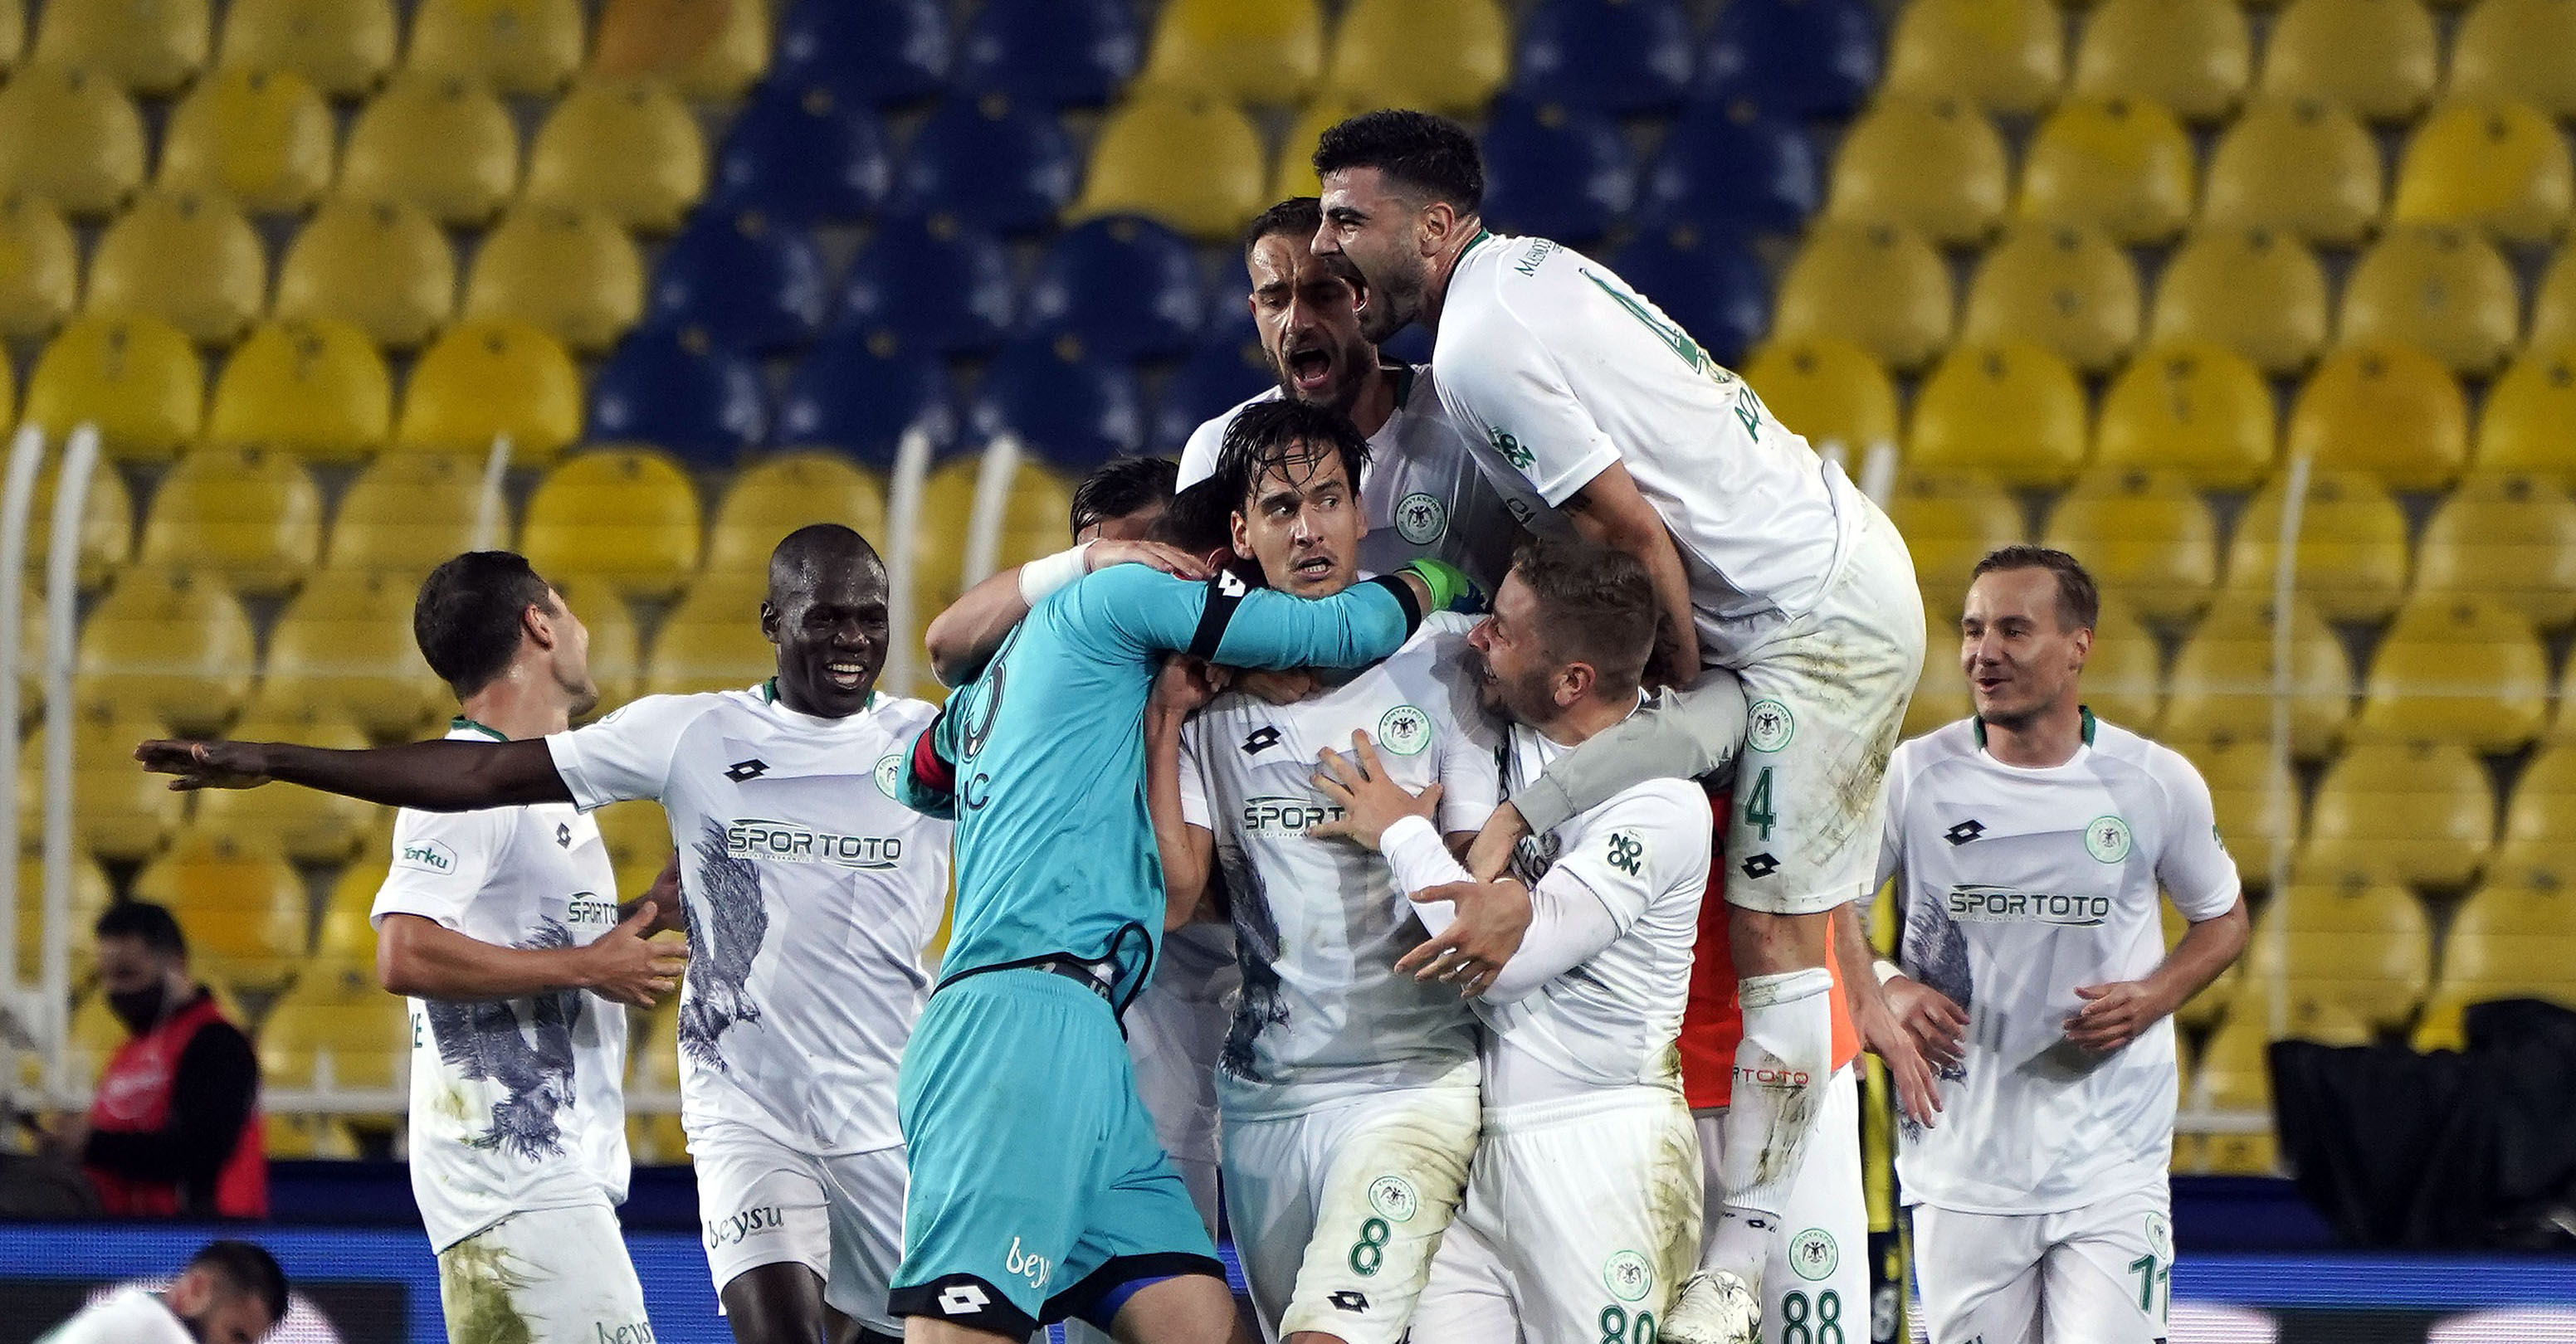 'Anadolu Kartalı' Konyaspor, Süper Lig'deki 21. sezonuna hazır